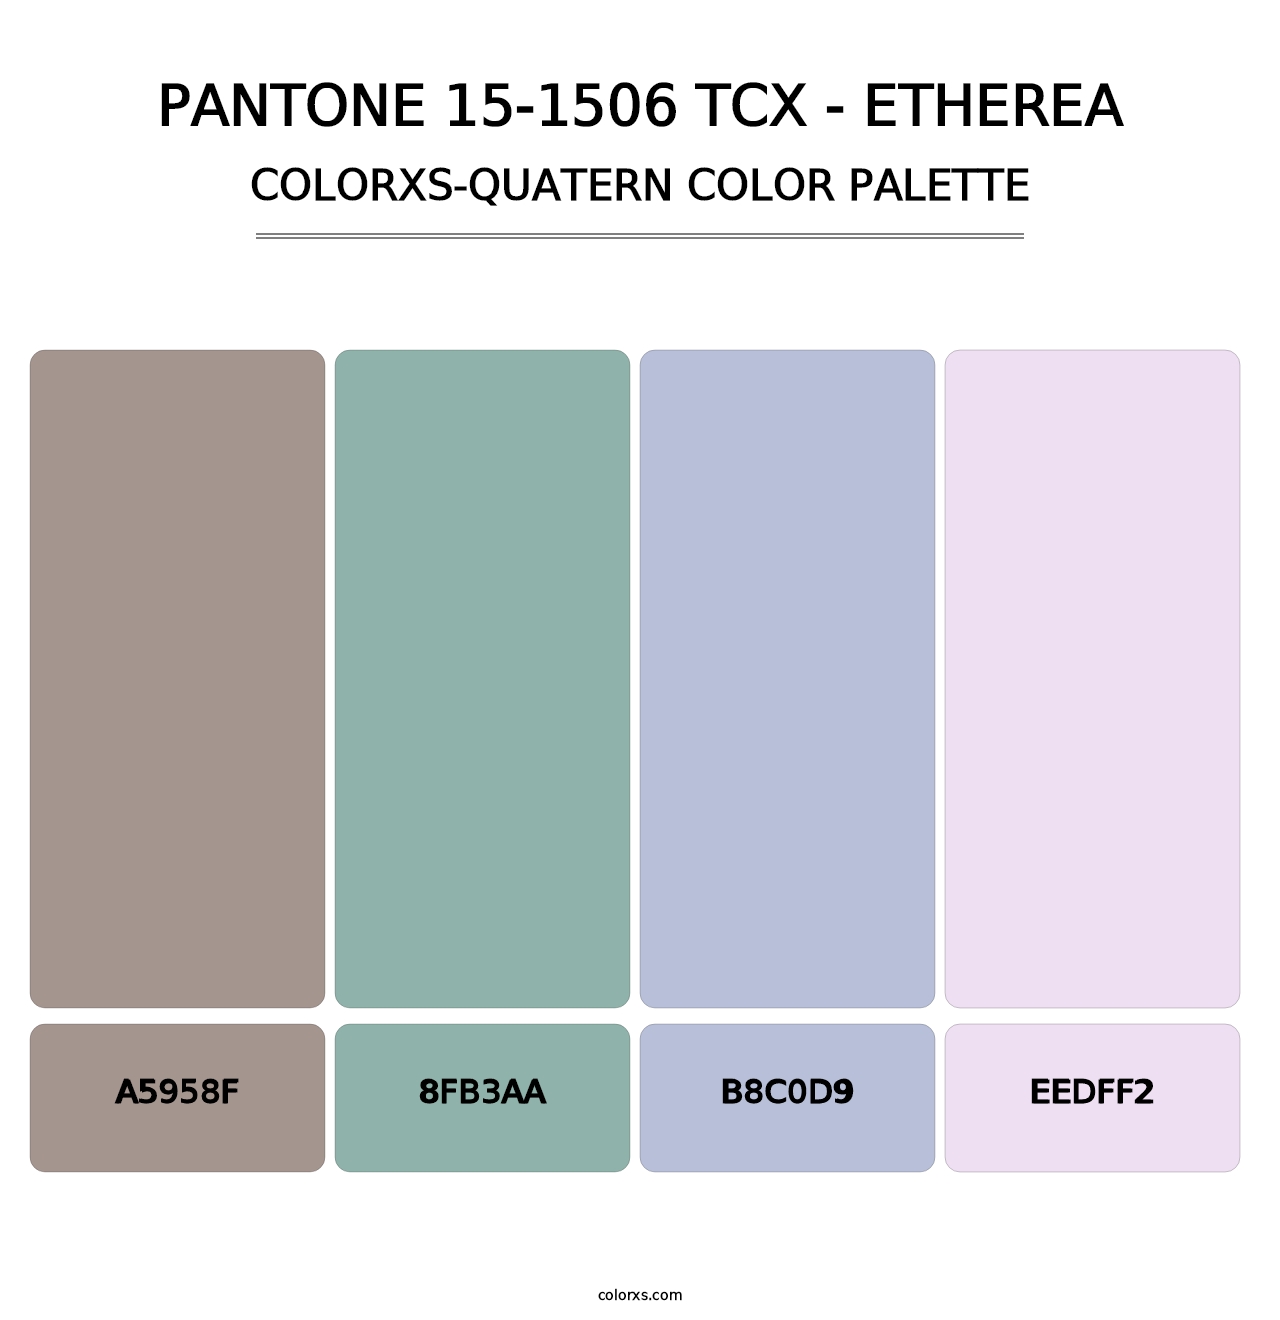 PANTONE 15-1506 TCX - Etherea - Colorxs Quatern Palette